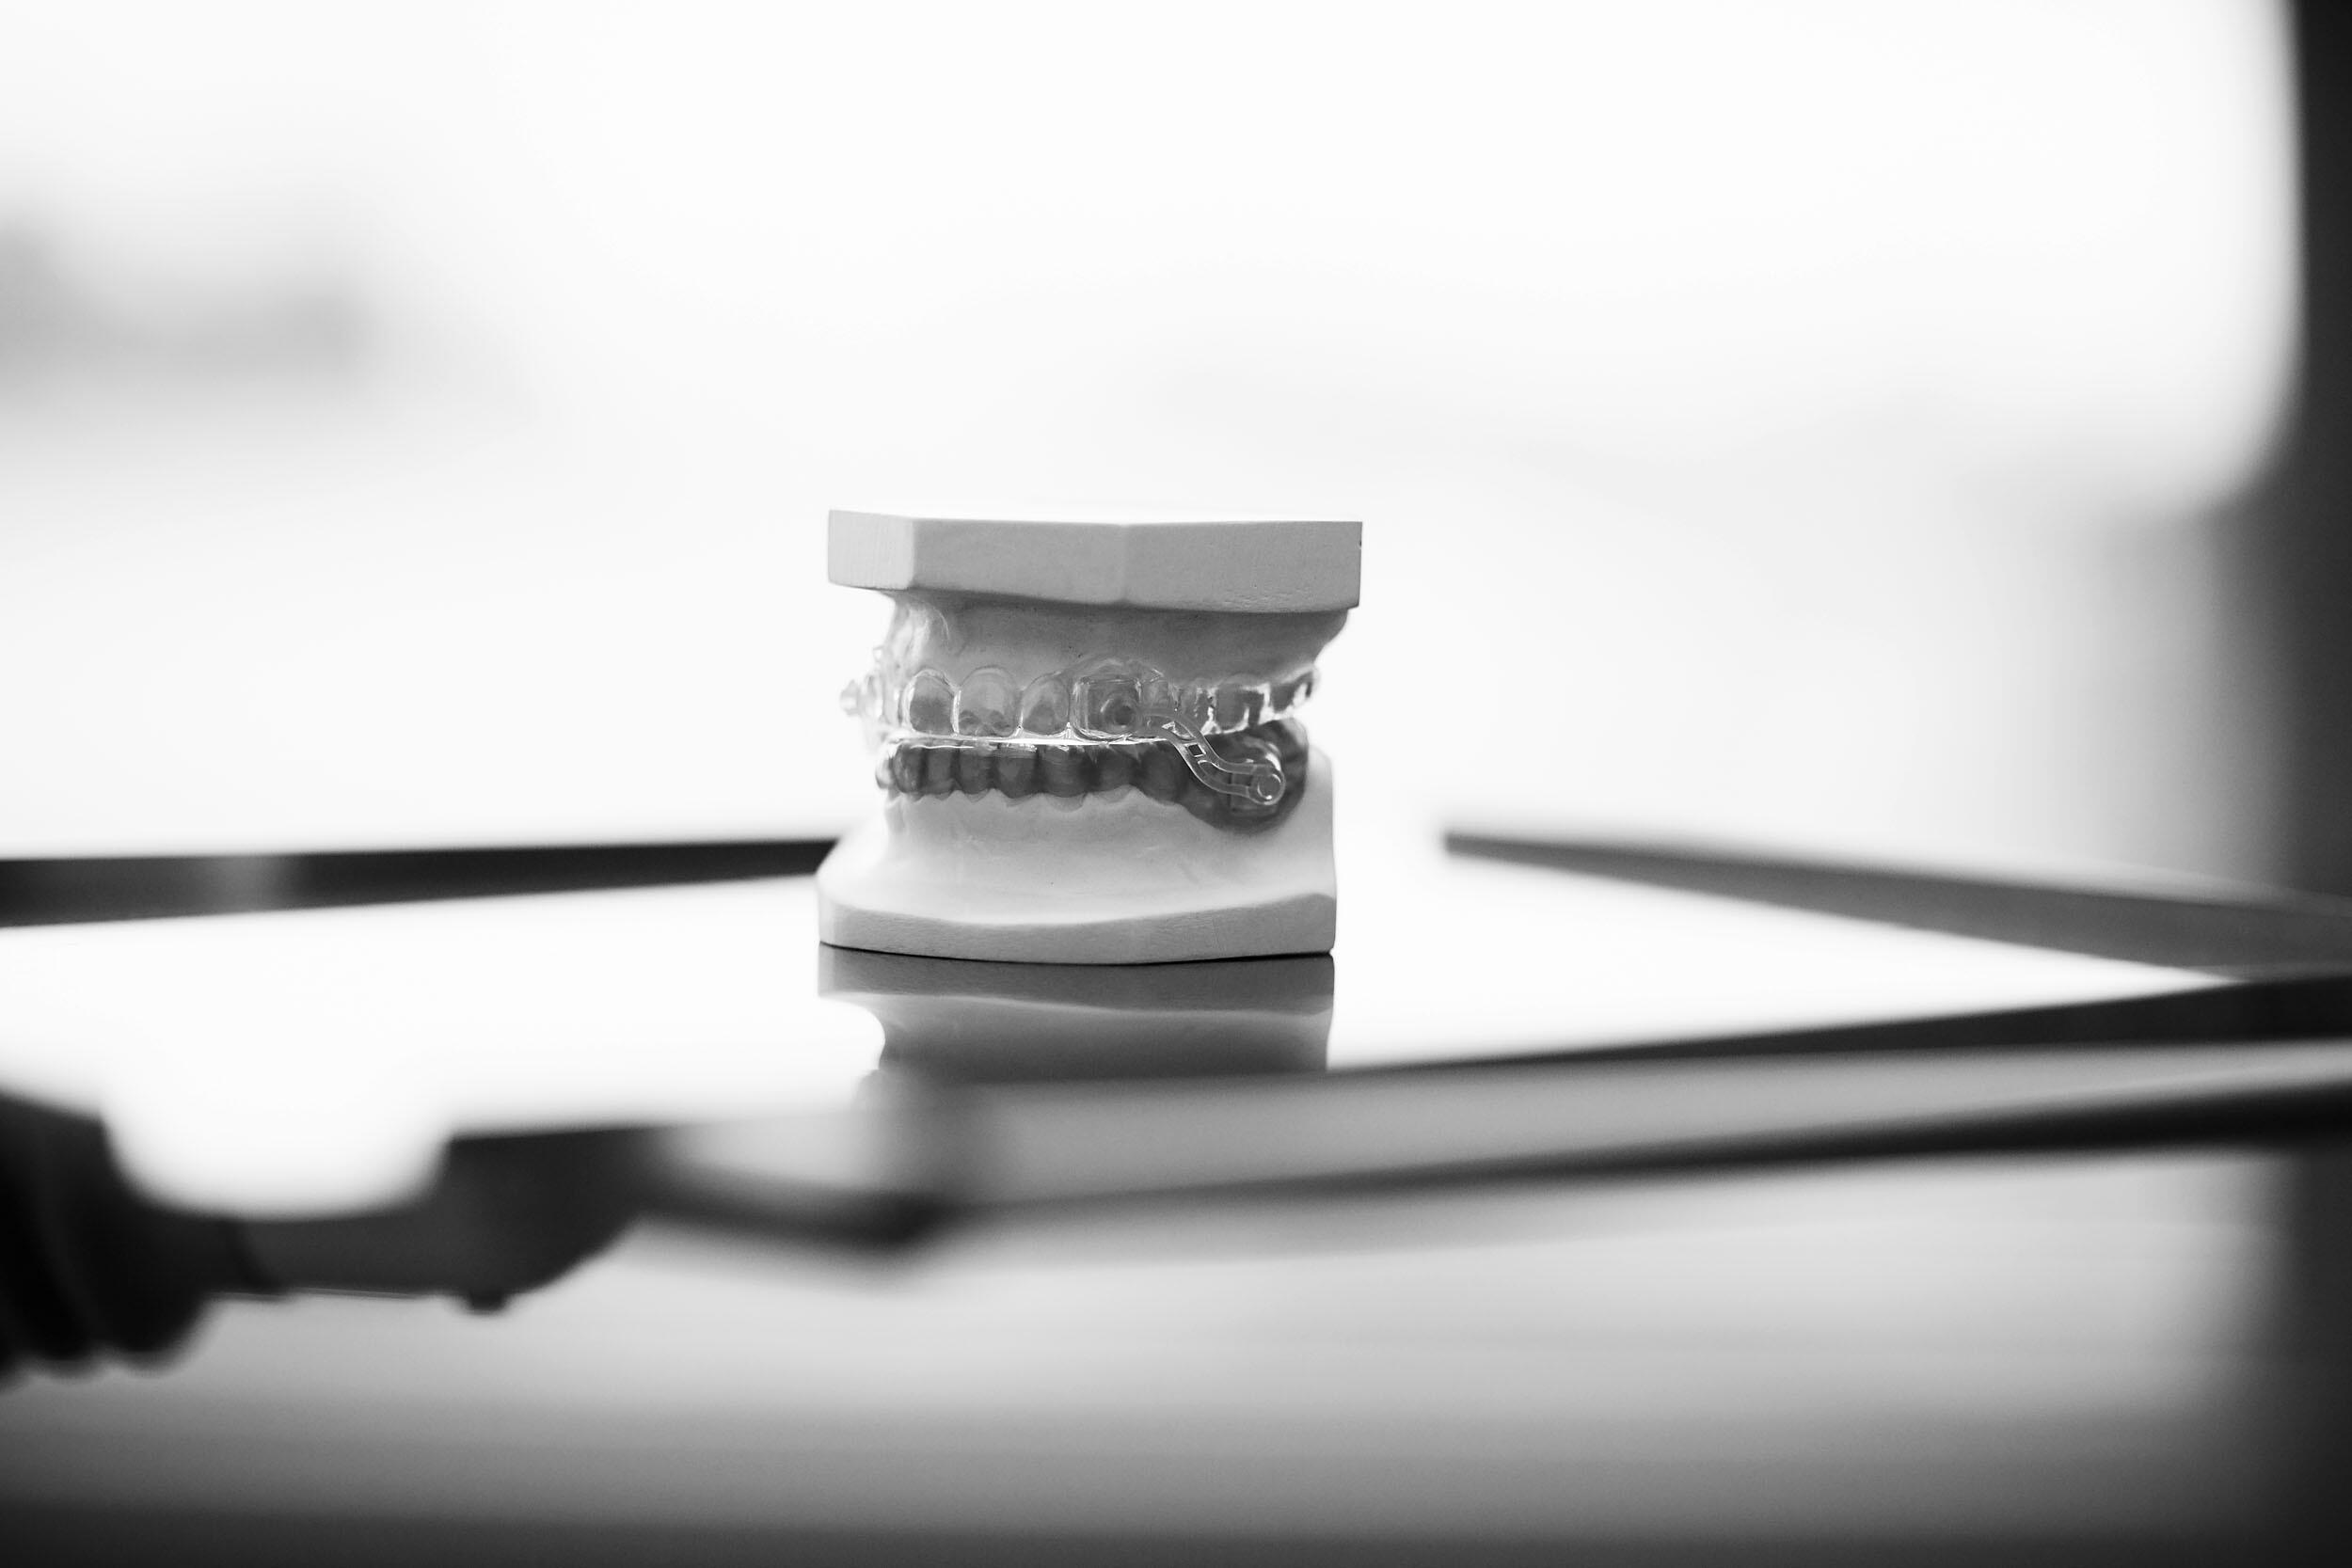 Bild zeigt ein Gipsmodell von einem Gebiss mit Zahnspange